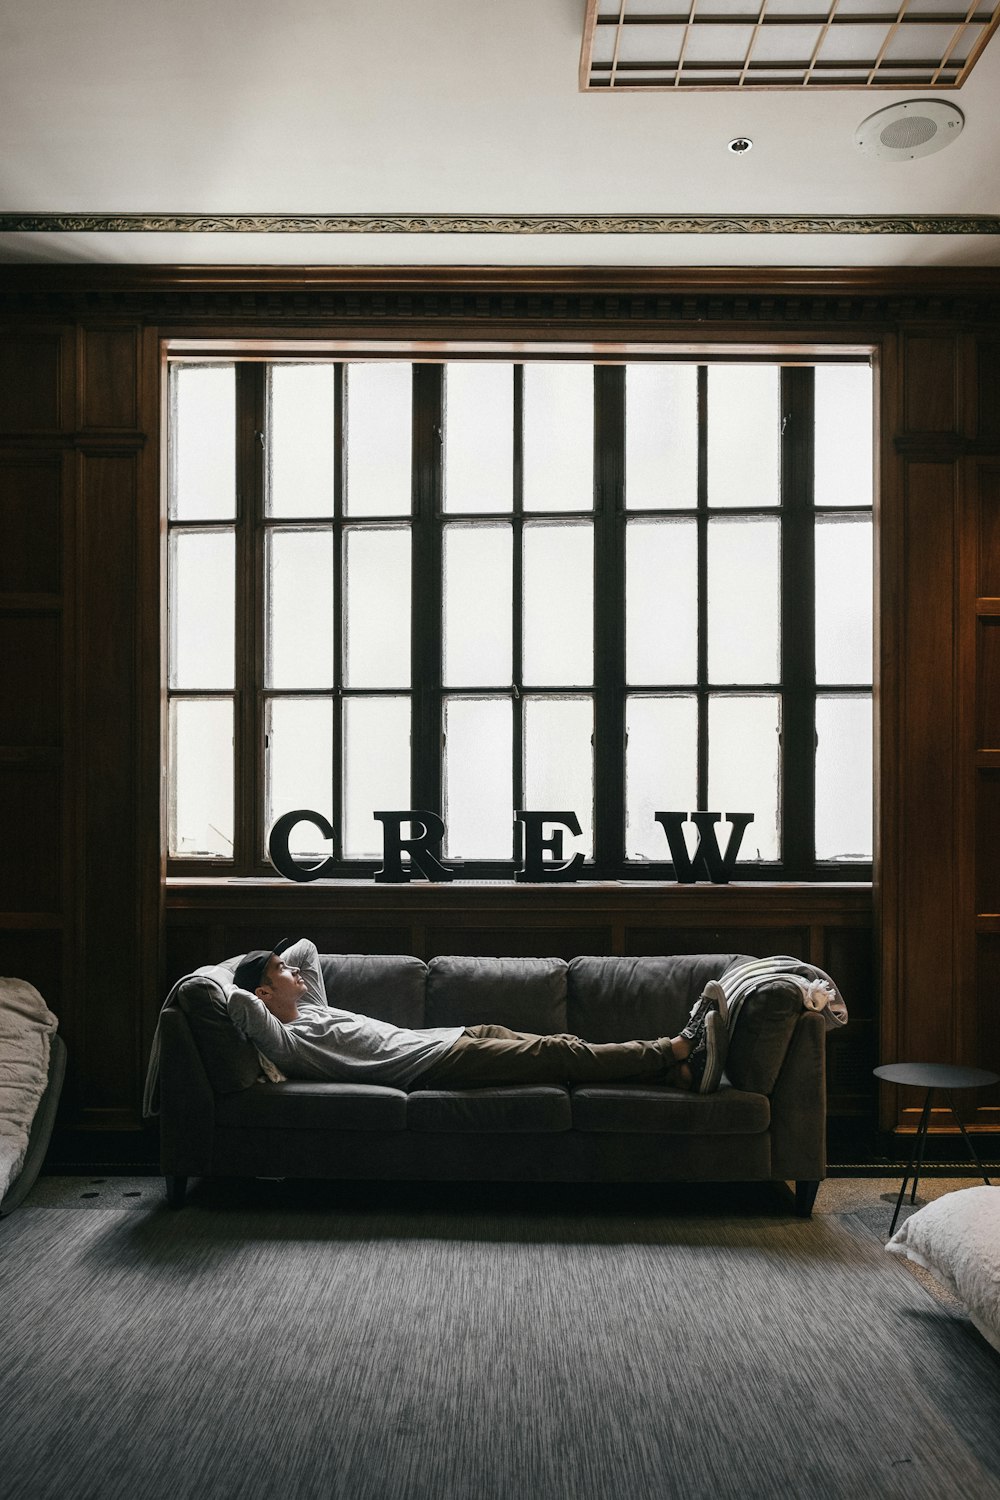 Foto de la persona acostada en el sofá cerca de la ventana